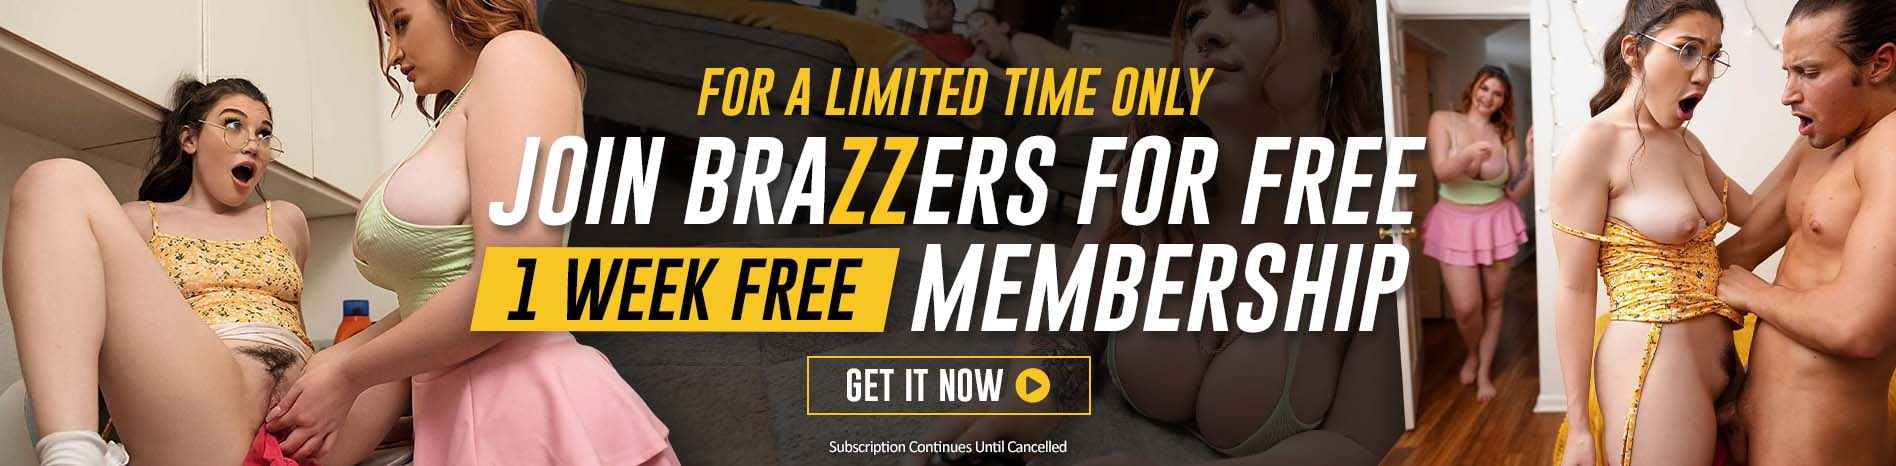 Brazzers video full free New 720p,1080p